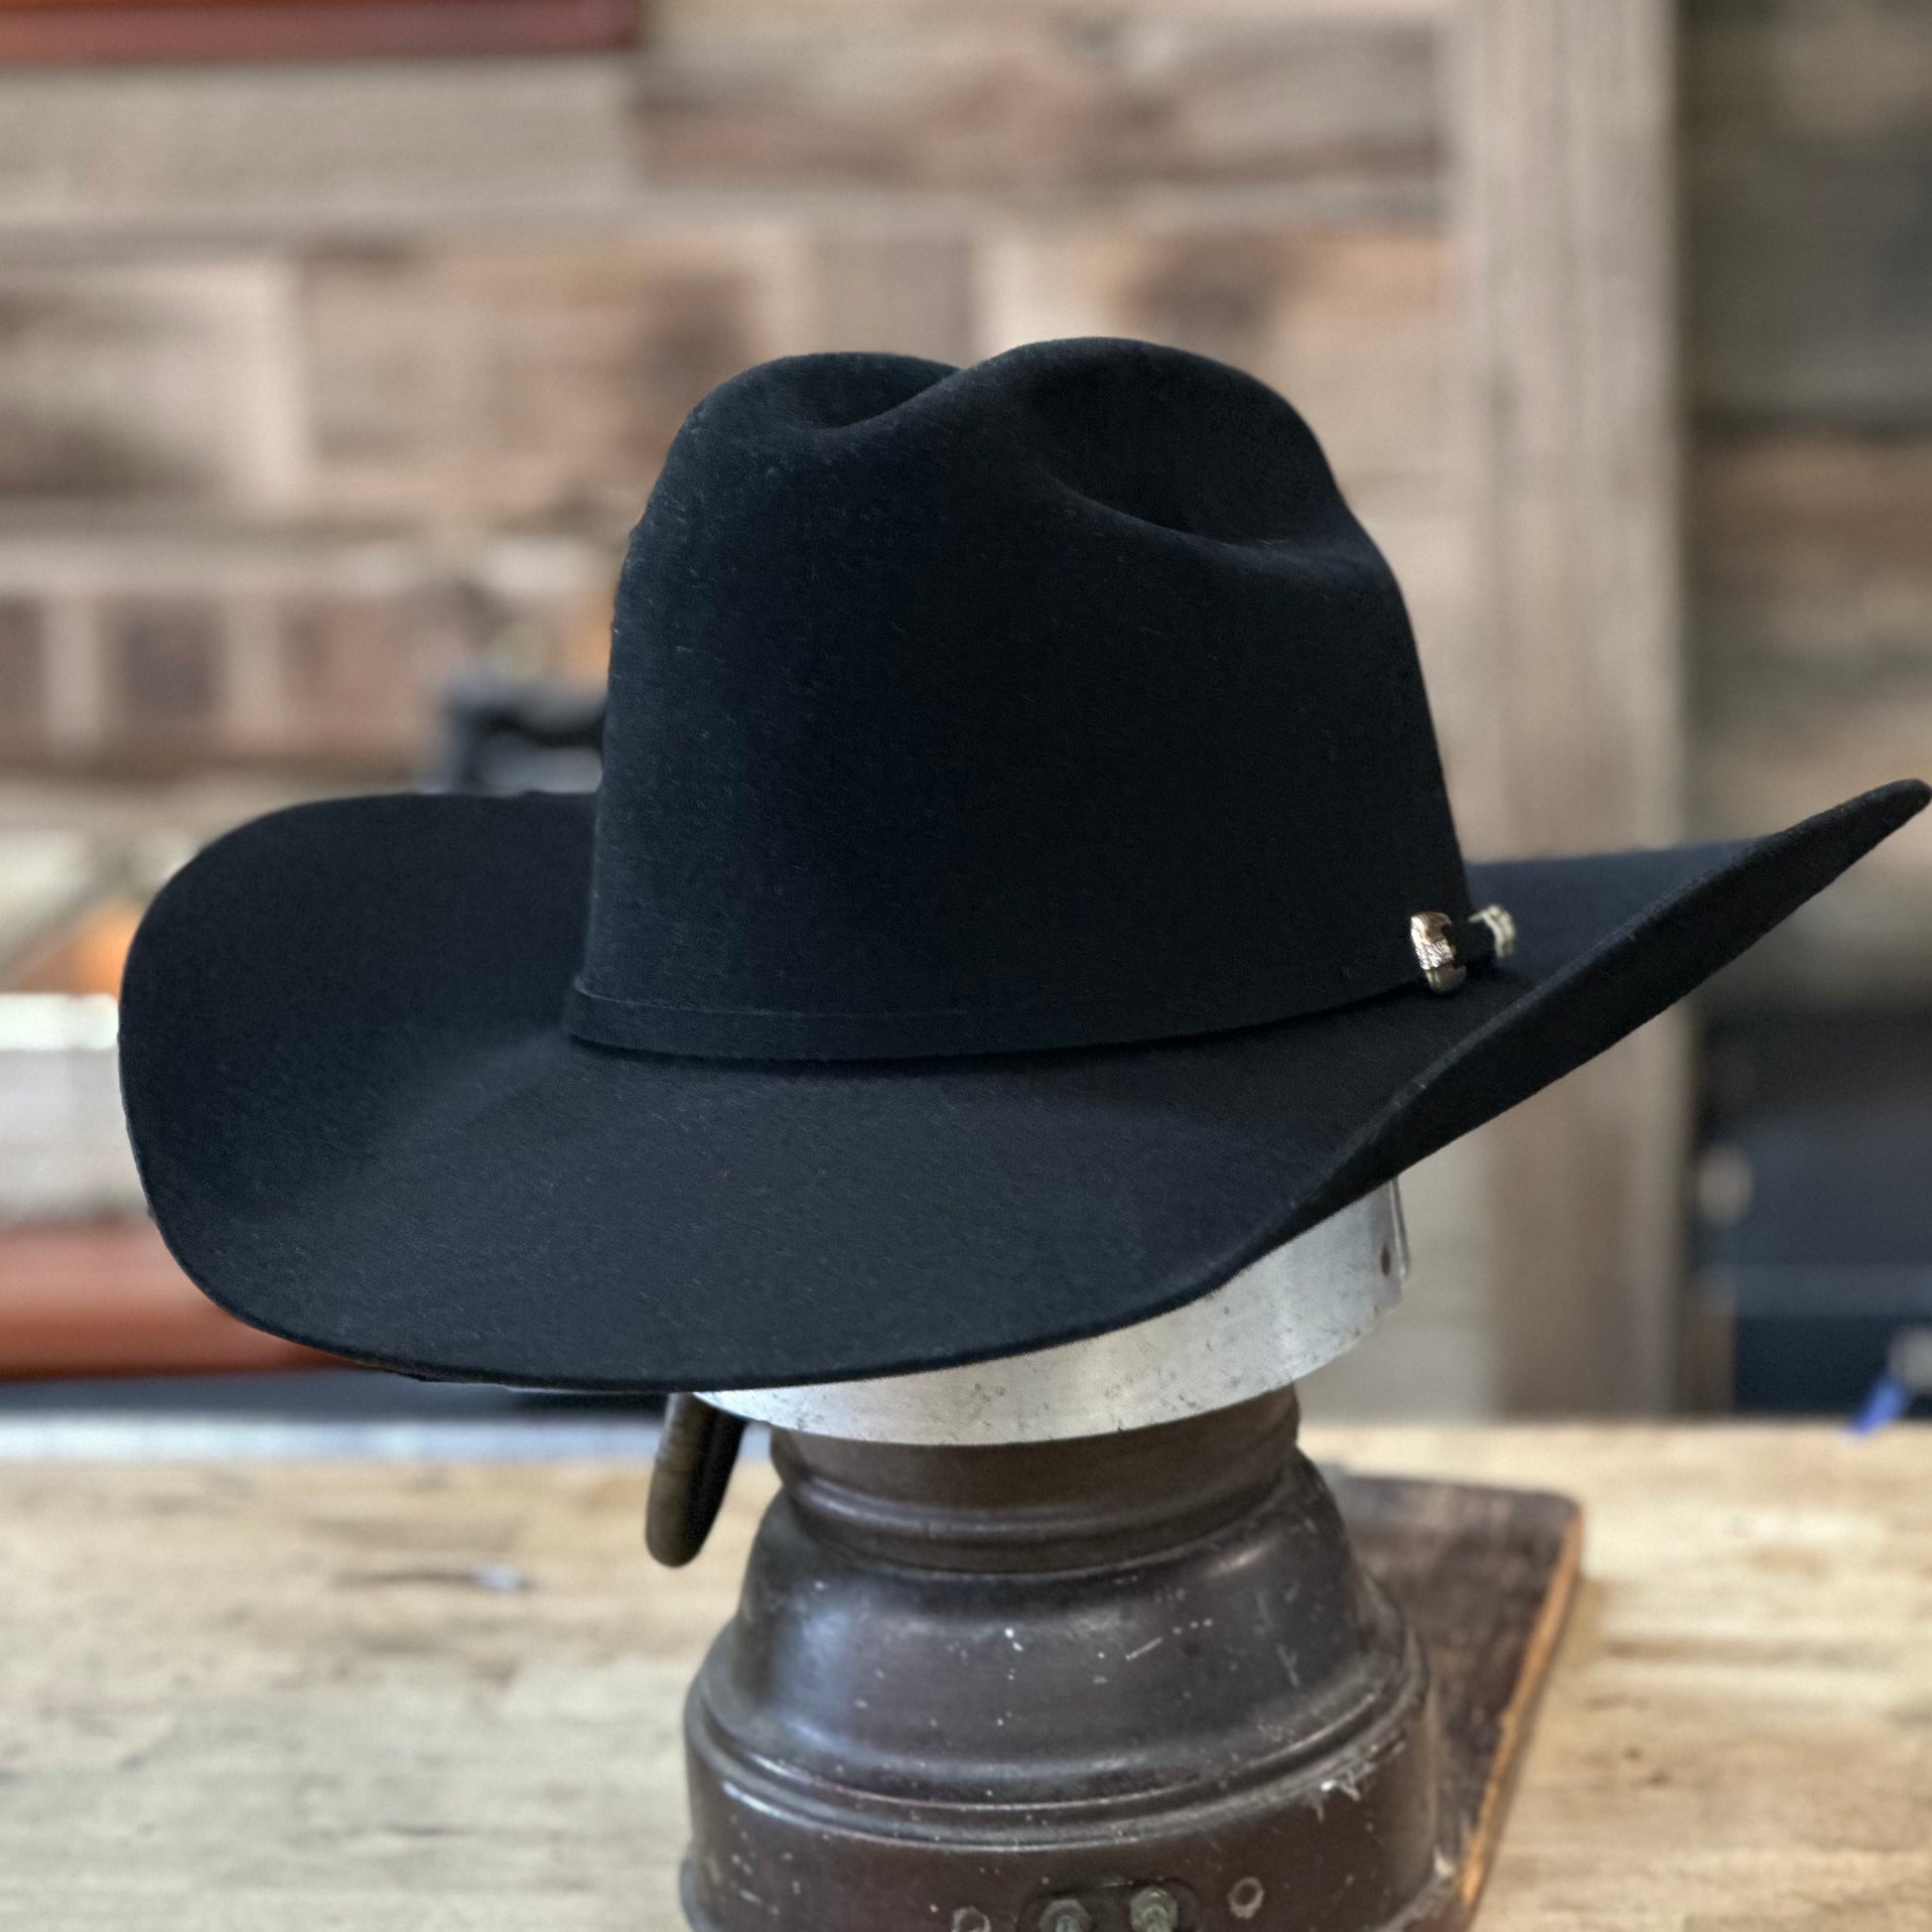 Stetson Western Hats Website - Mens Diamante Premier Cowboy